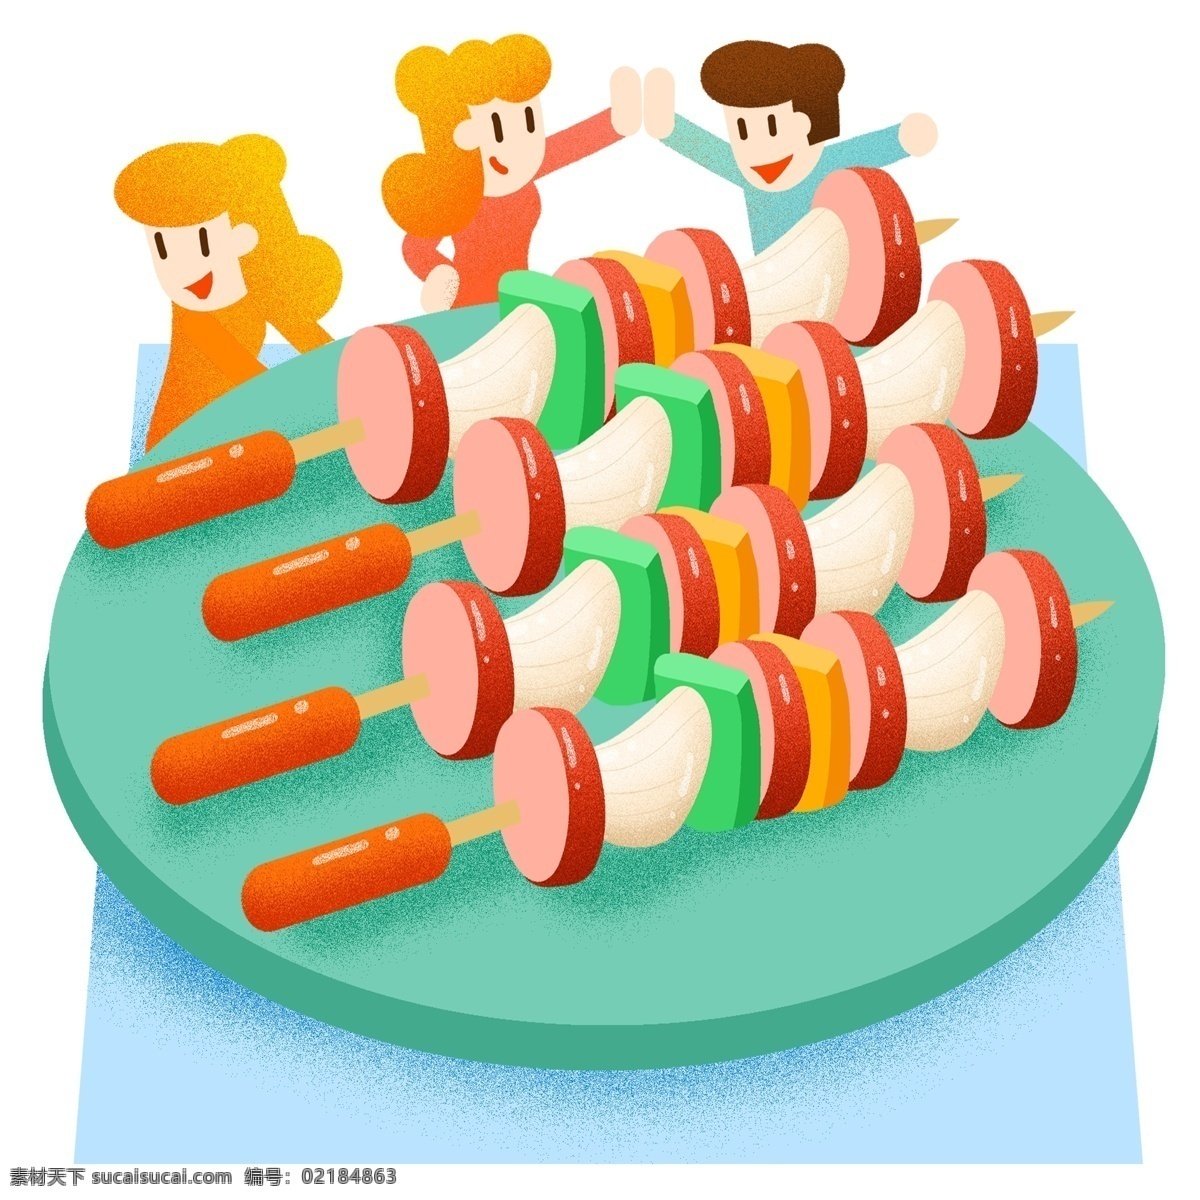 夏季 烧烤 bbq 吃货 肉食 撸串 聚会 小清新 夏天